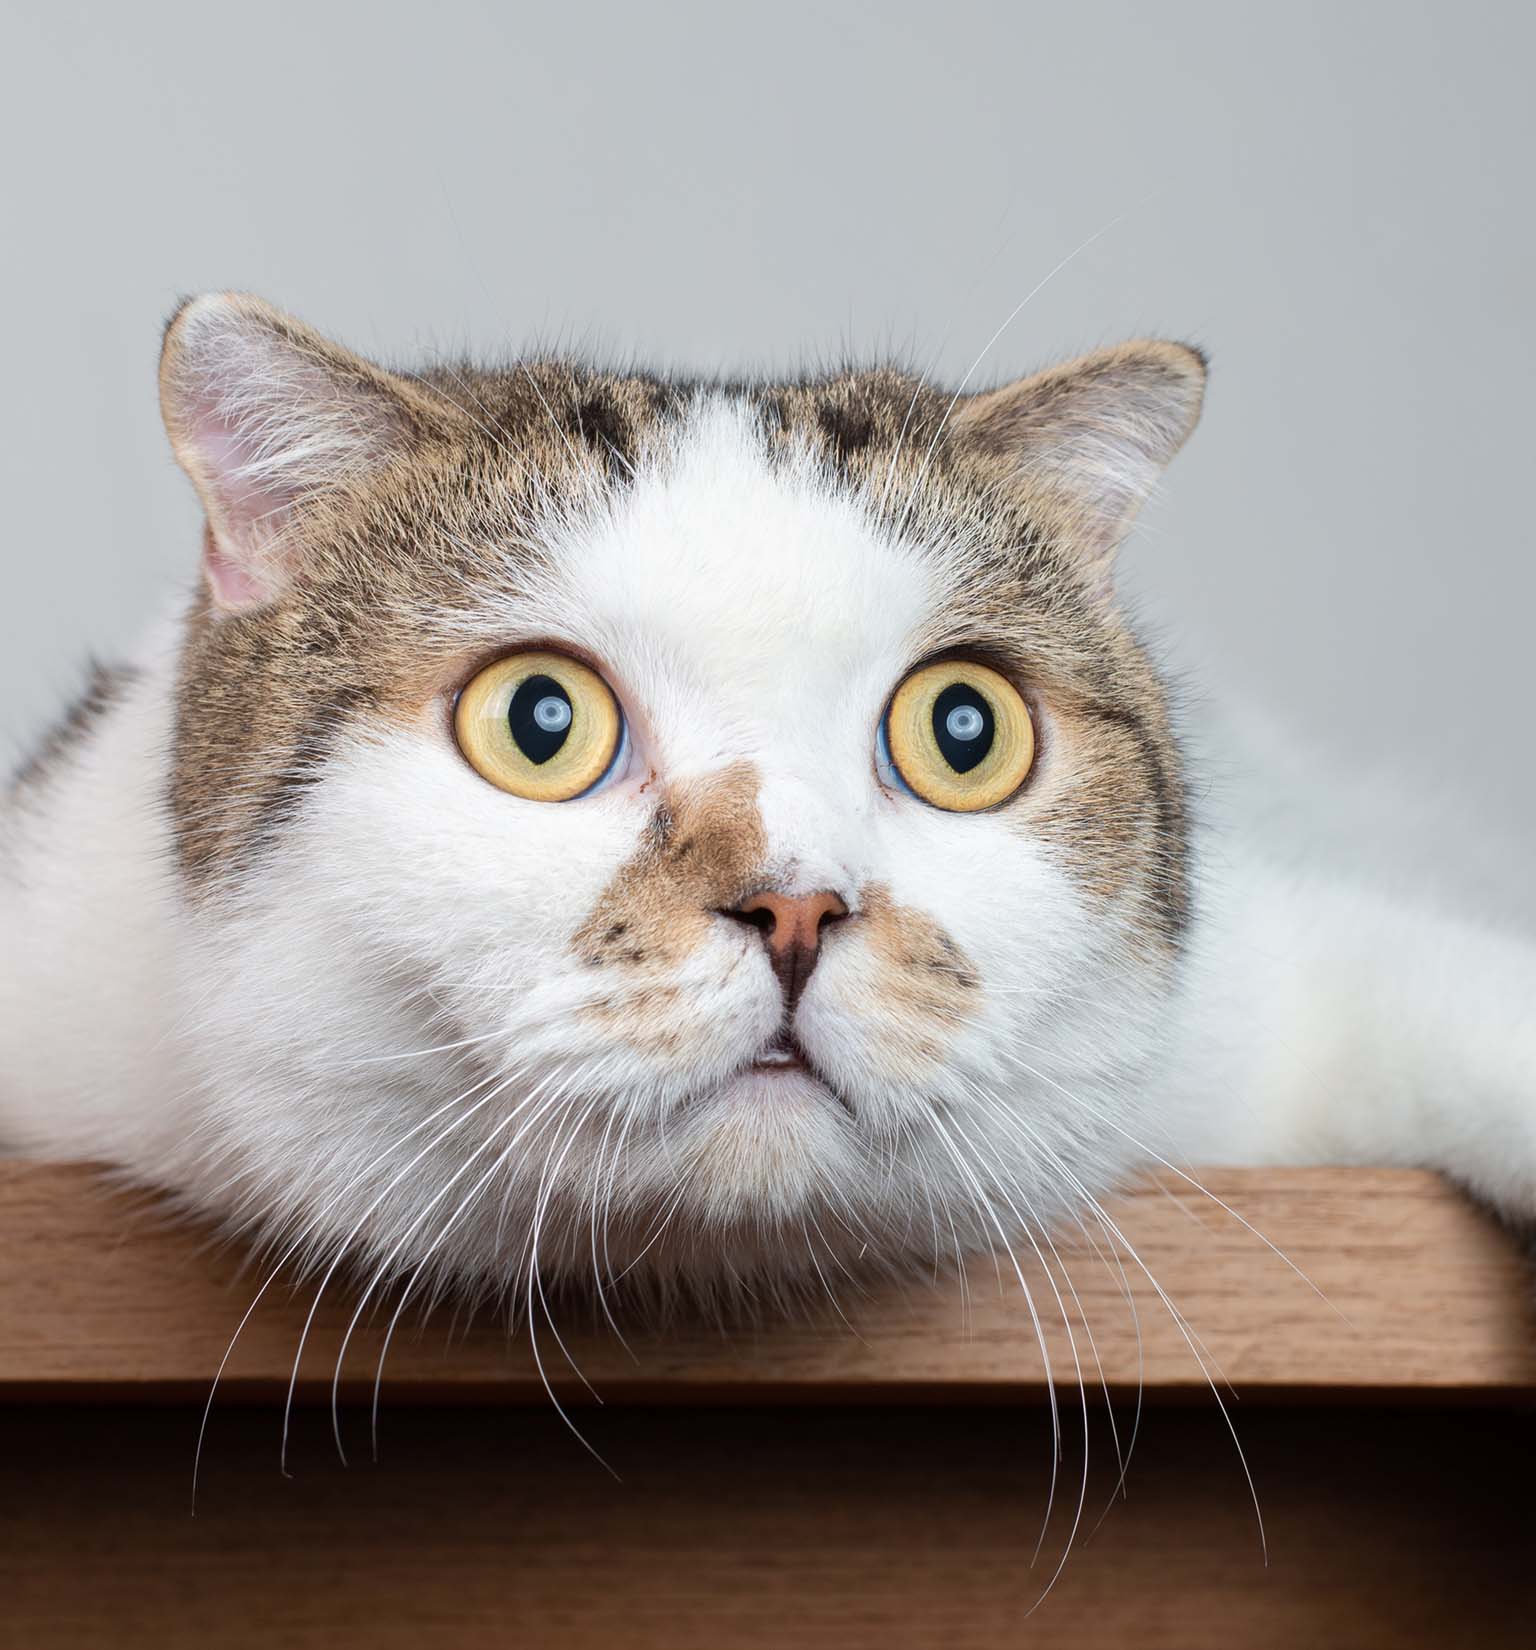 Descubierto: los gatos domésticos tienen 276 expresiones faciales diferentes